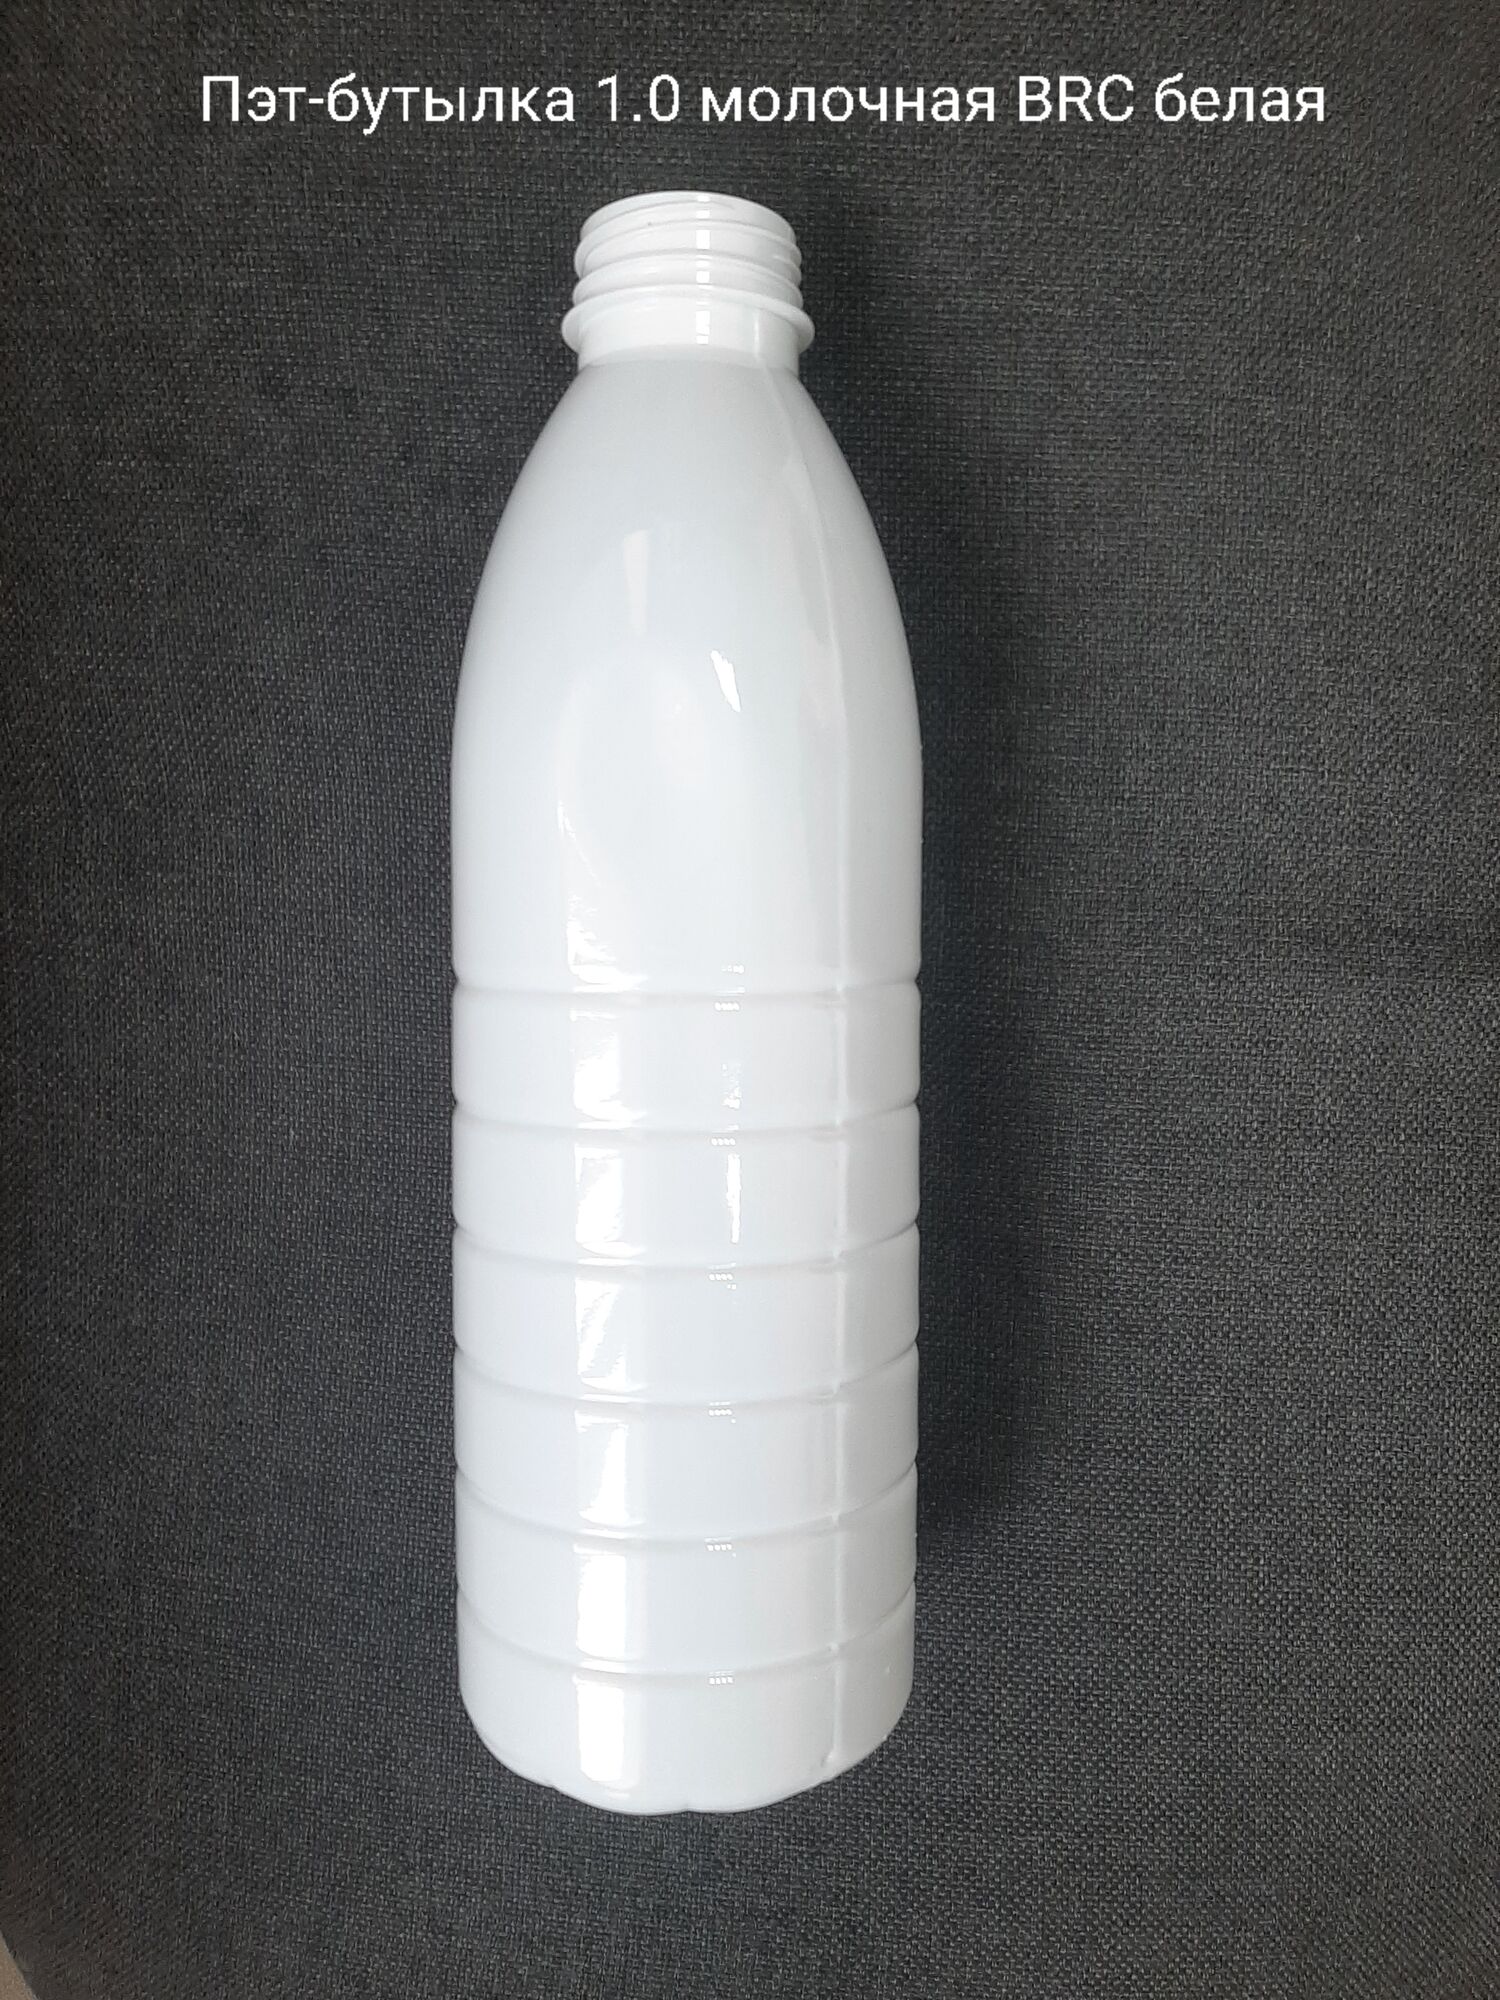 Пэт-бутылка 1,0 молочная BRC, белая (120 шт в упаковке) вес 27 гр